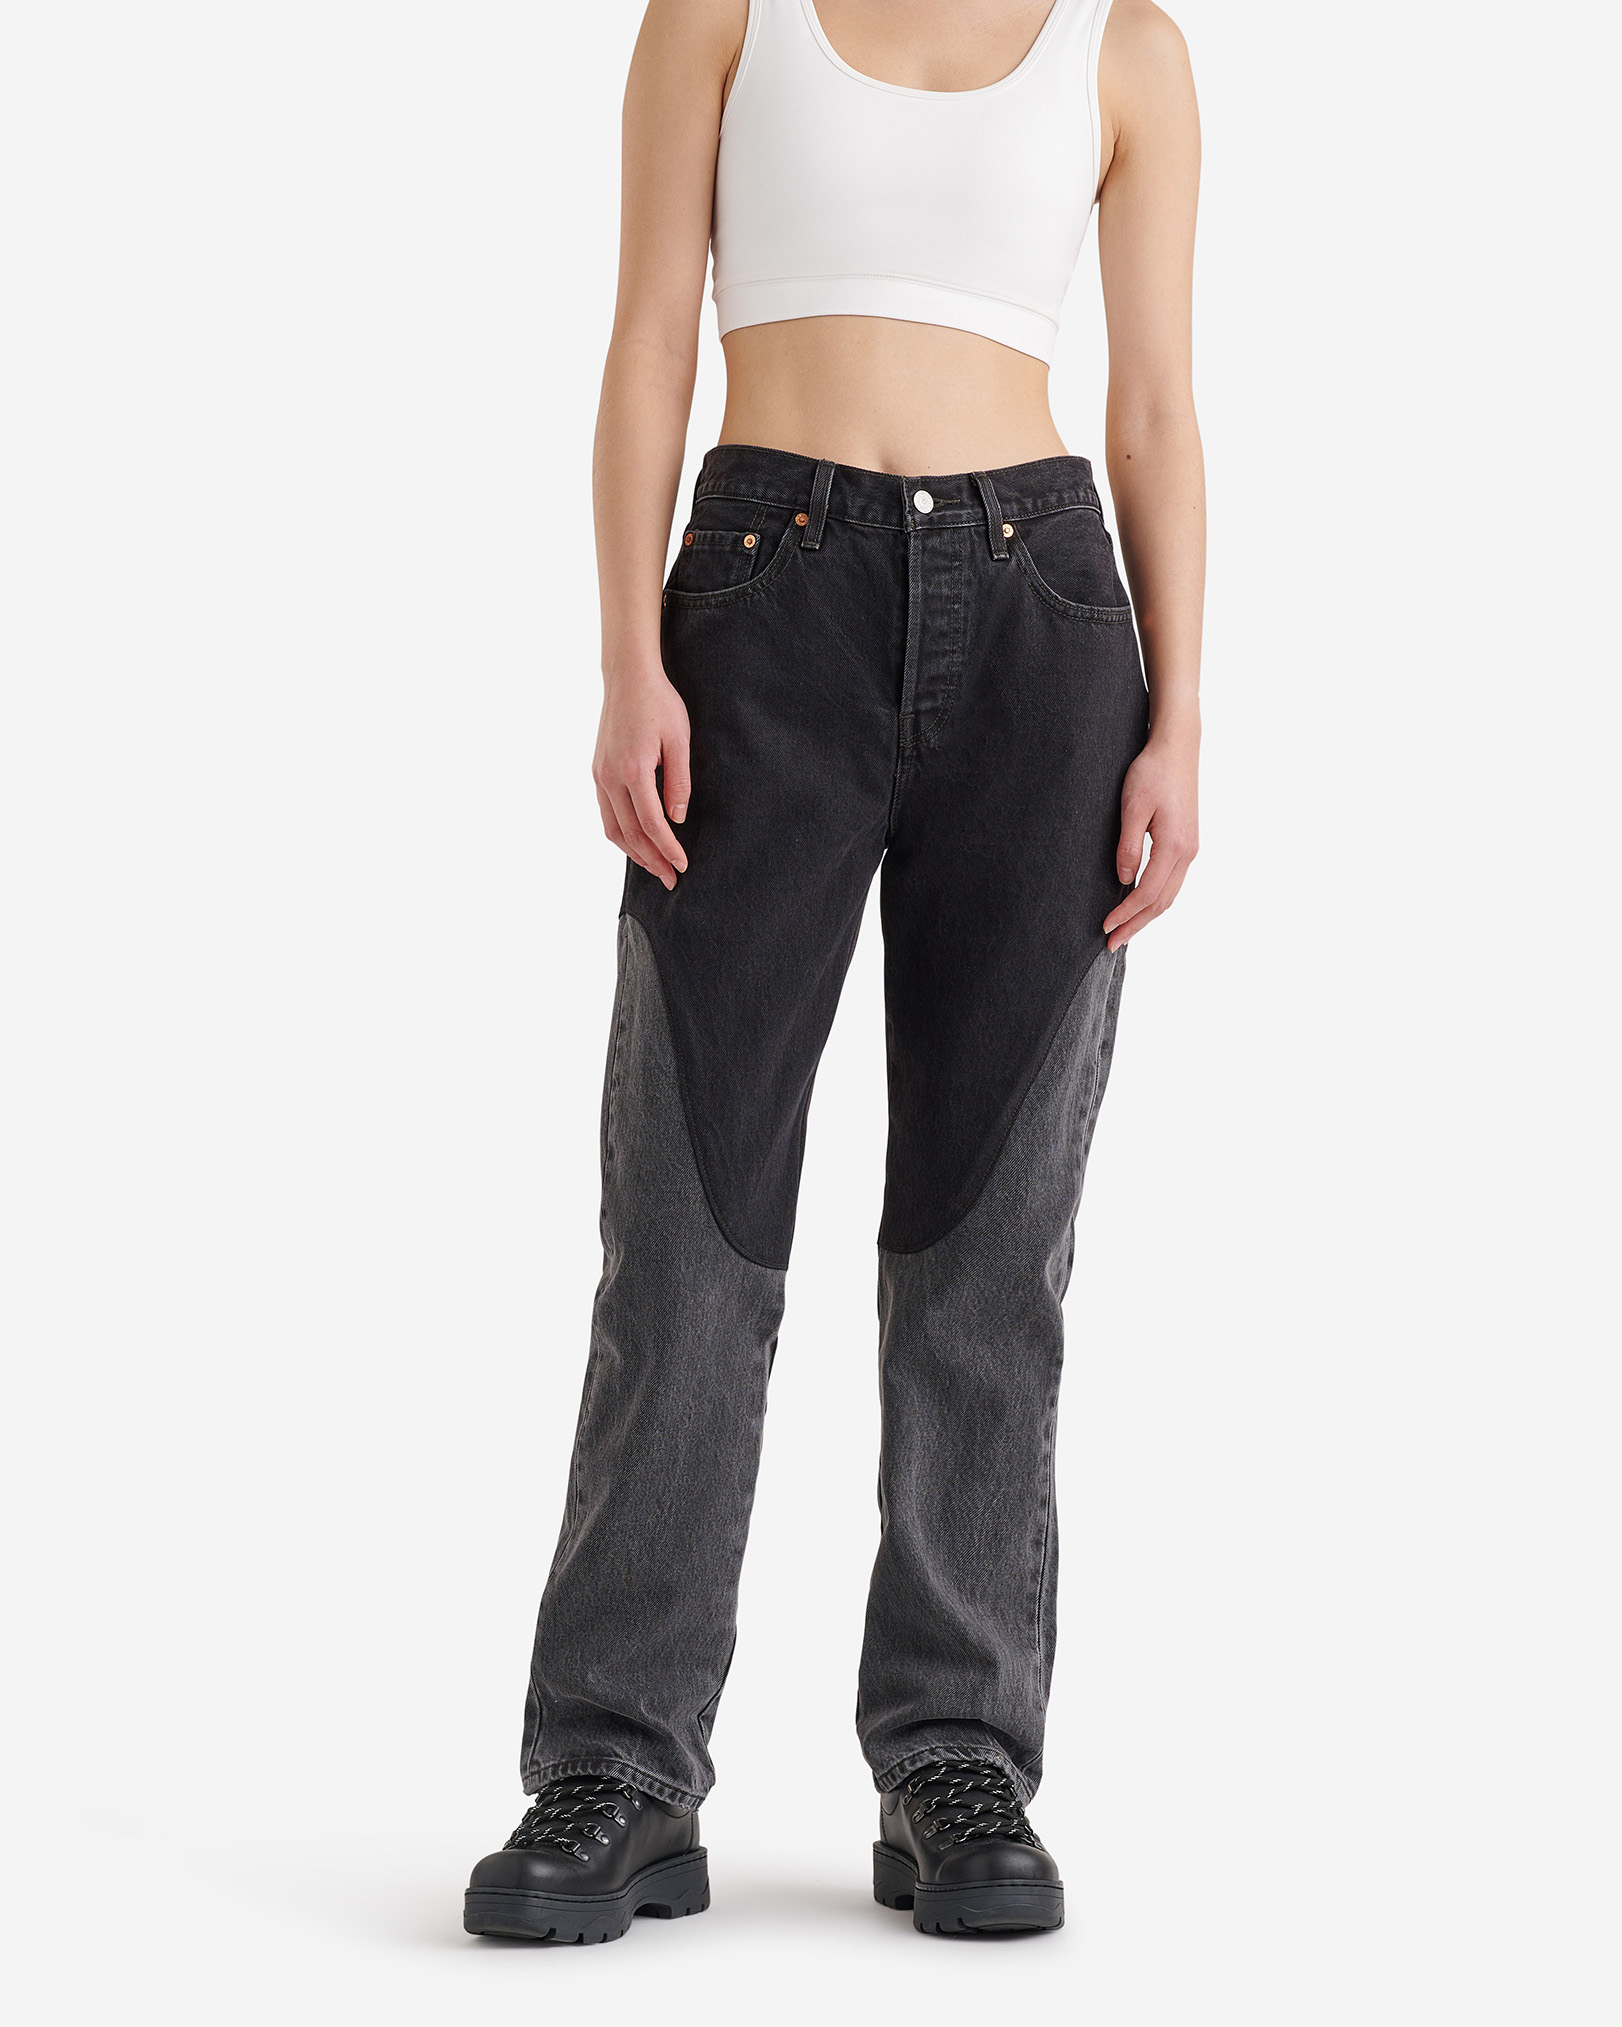 Roots Levi's 501® Original Chaps Women's Jeans Pants in Black